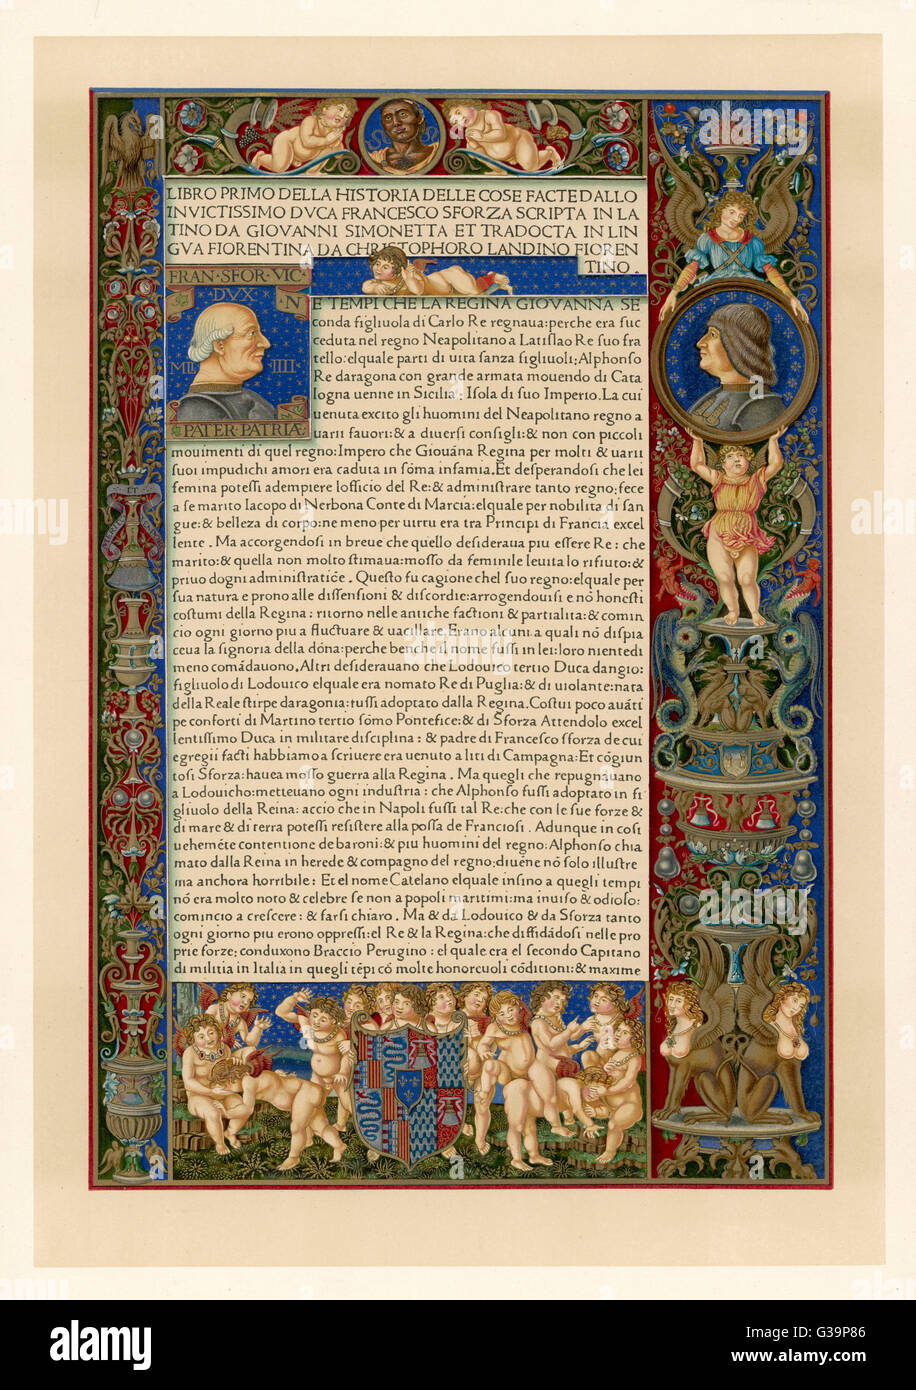 Una pagina di Simonetta come Historia delle cose faccia dallo invictissimo Duca Francesco Sforza - manoscritto italiano data: 1490 Foto Stock